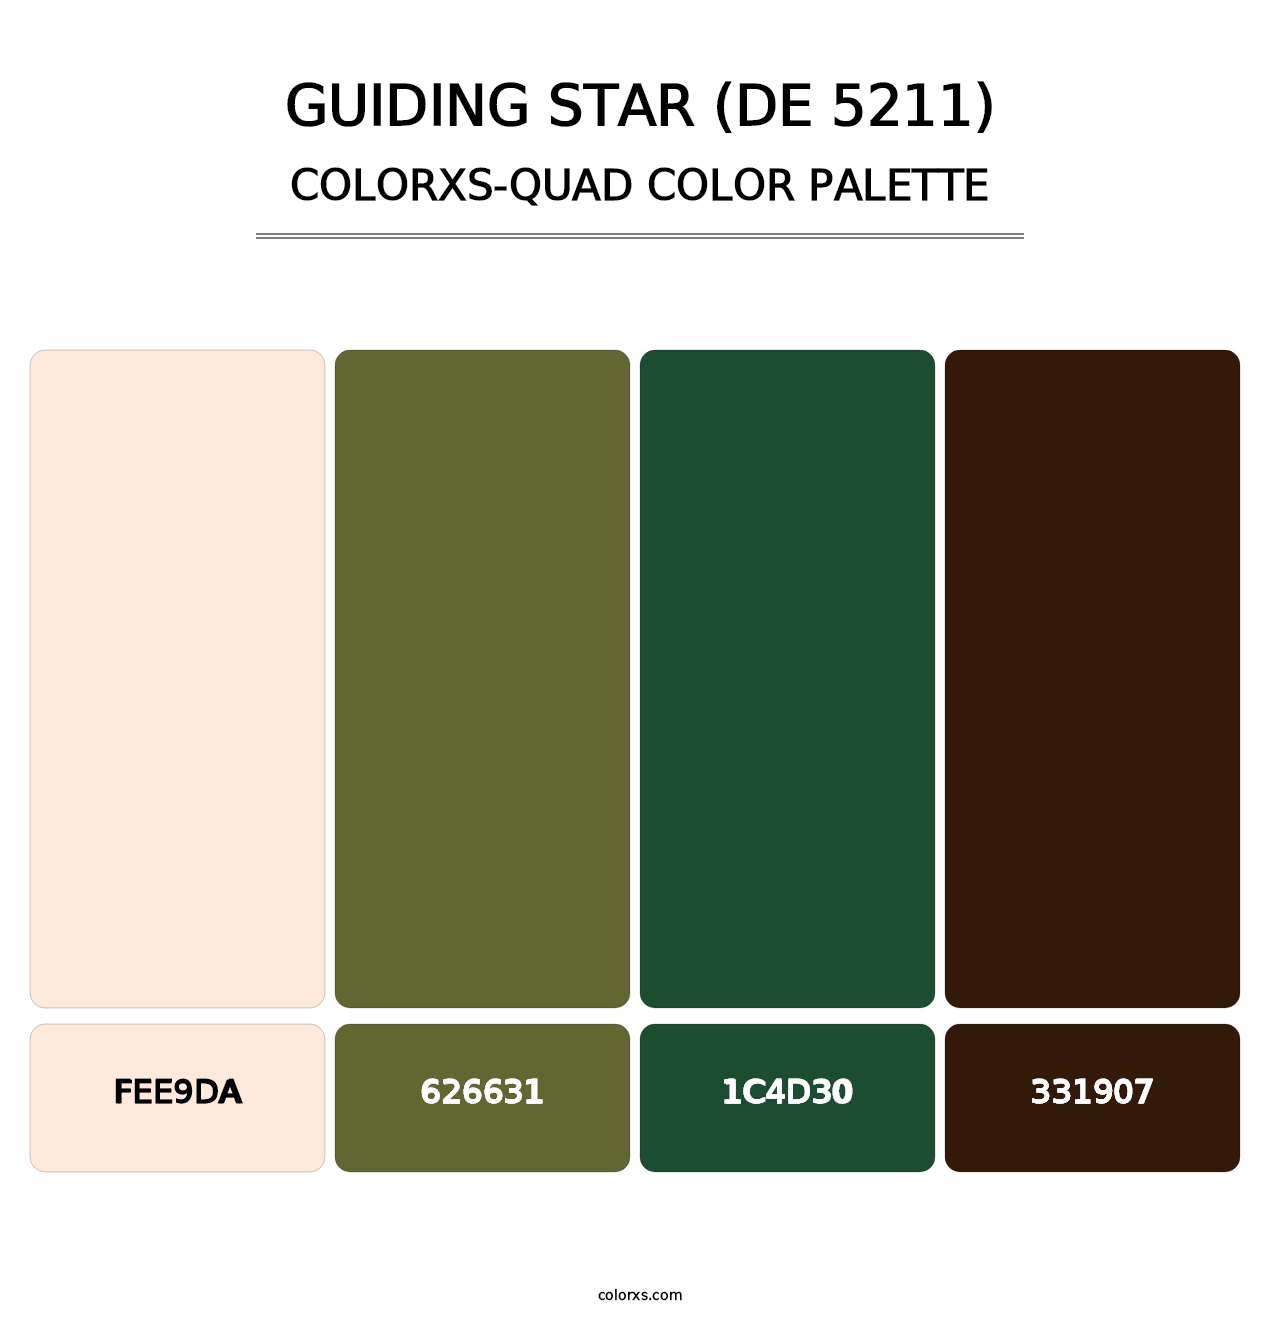 Guiding Star (DE 5211) - Colorxs Quad Palette